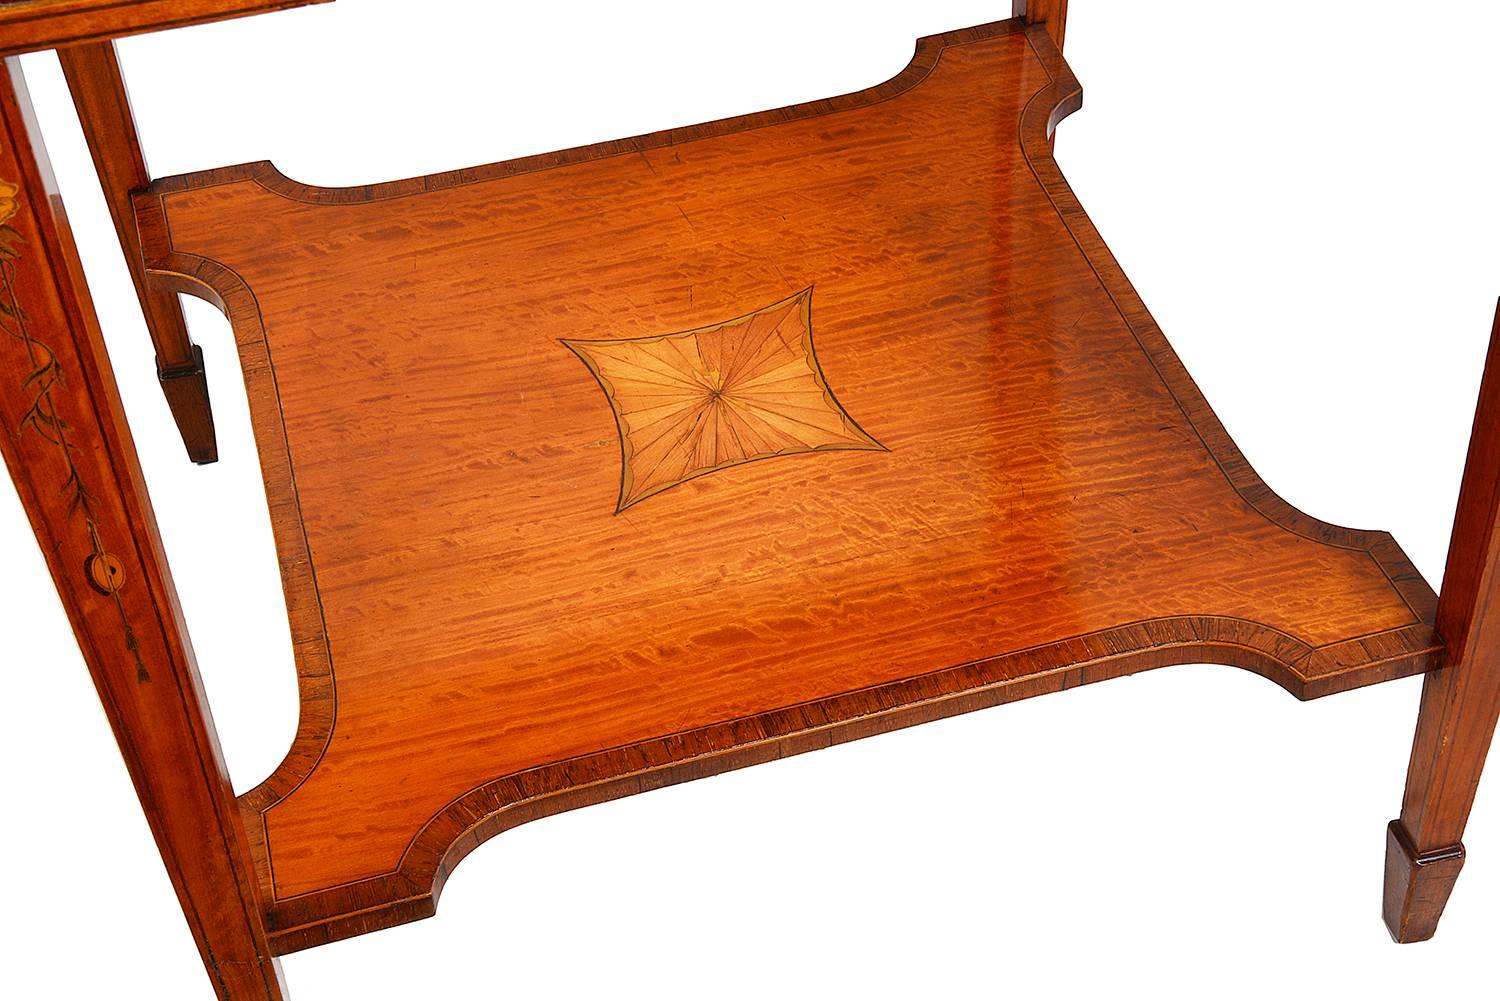 Eine feine Qualität Edwardian Zeitraum Satinwood Umschlag Kartentisch, mit klassischen Intarsien Dekoration auf der Oberseite, Fries und Beine. Er hat eine einzelne Friesschublade, steht auf quadratischen, spitz zulaufenden Beinen und hat eine